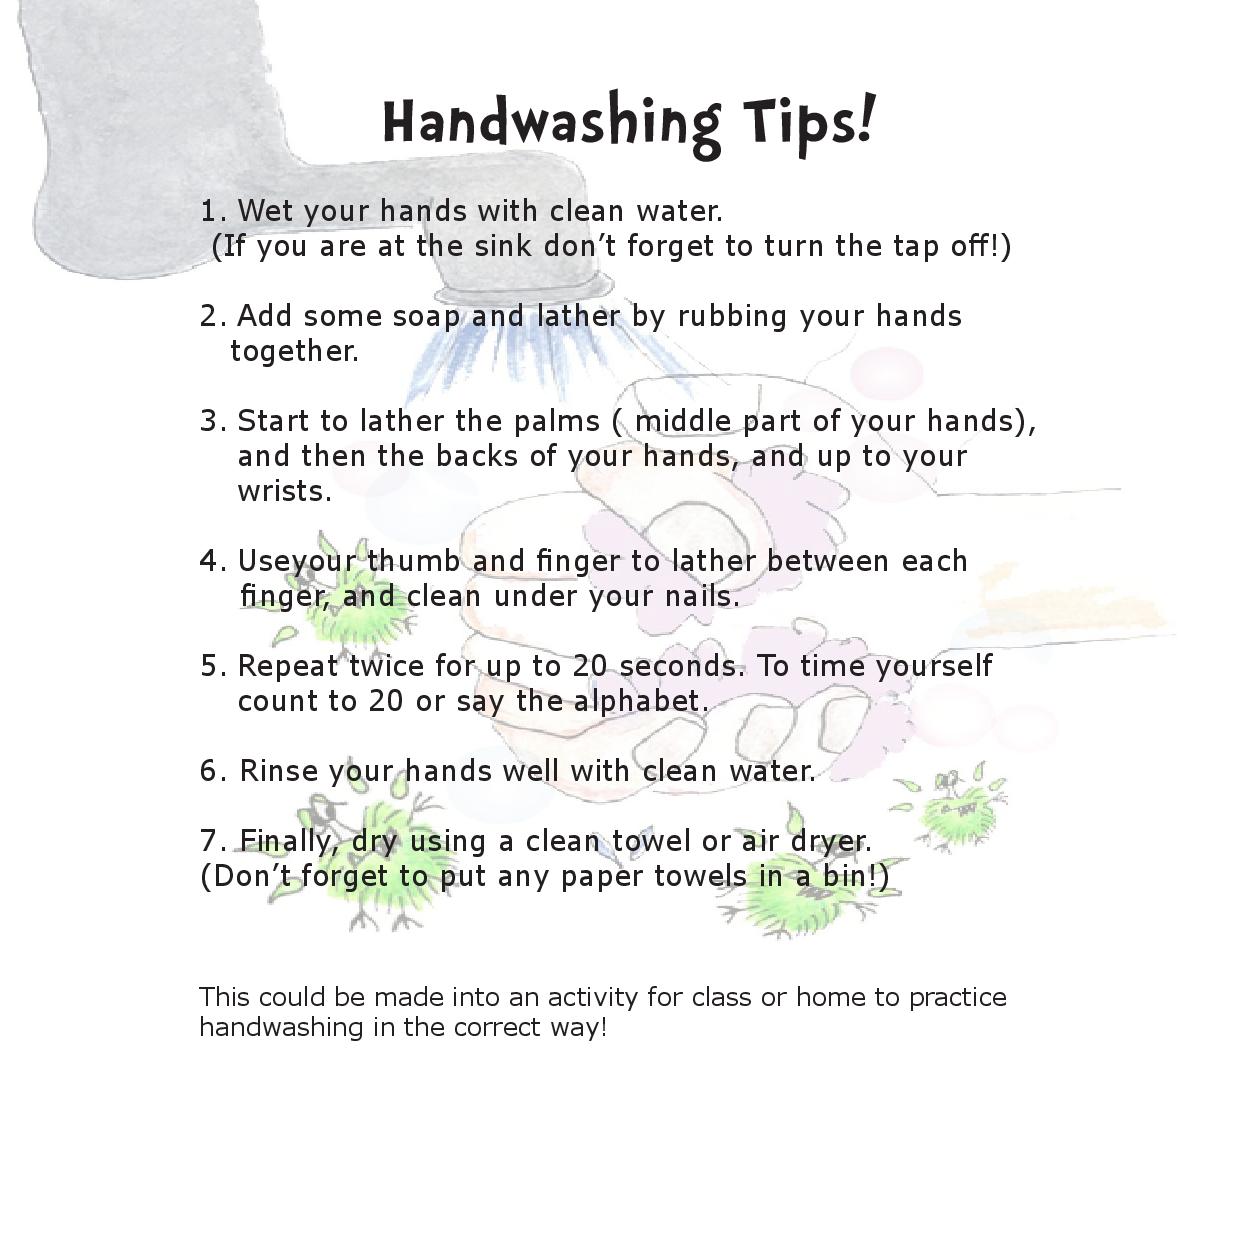 Handwashing tips